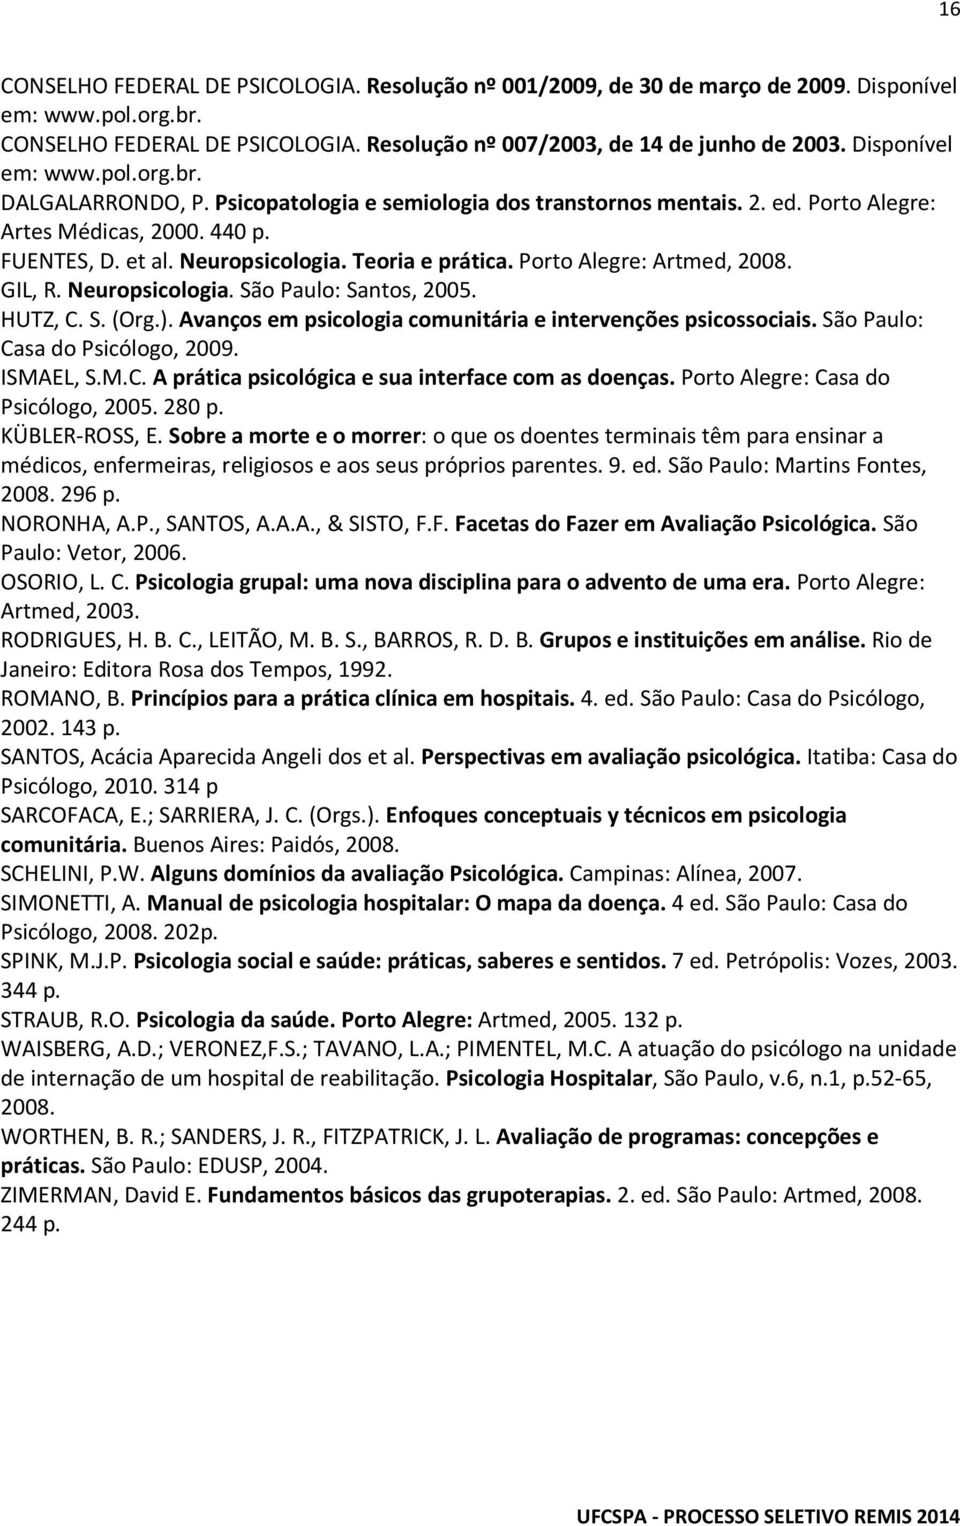 Teoria e prática. Porto Alegre: Artmed, 2008. GIL, R. Neuropsicologia. São Paulo: Santos, 2005. HUTZ, C. S. (Org.). Avanços em psicologia comunitária e intervenções psicossociais.